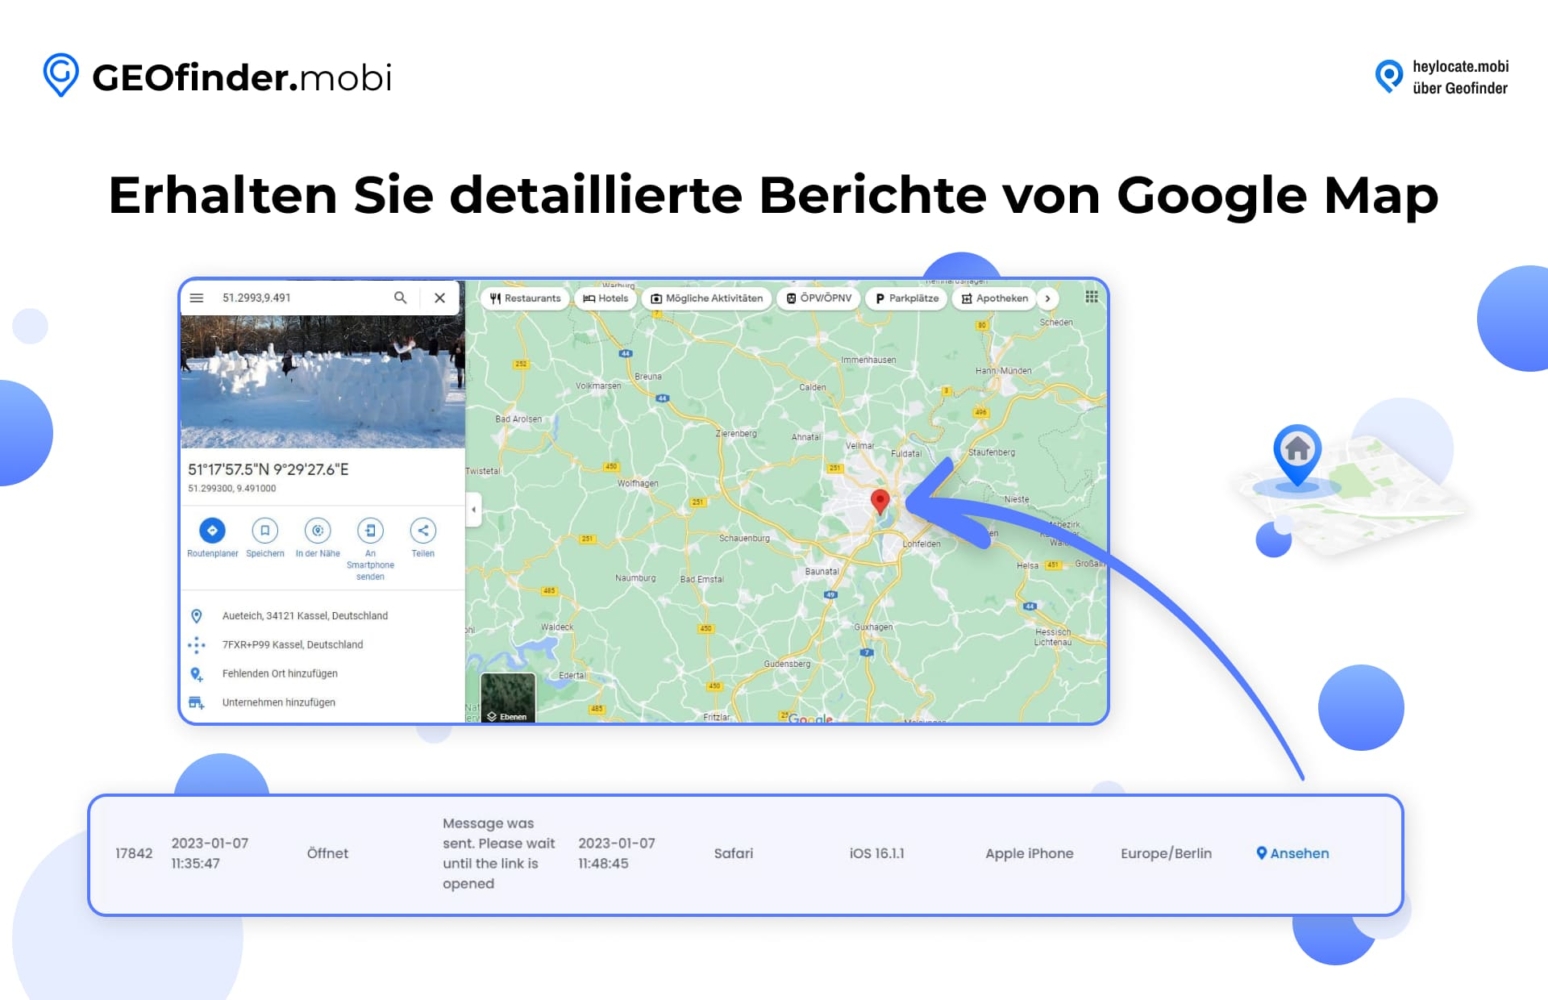 Anzeige der Funktion von GEOfinder.mobi zum Abrufen detaillierter Berichte von Google Maps, die eine Karte und Standortkoordinaten sowie eine detaillierte Ansicht einer Karte zeigt, die ein bestimmtes Gebiet mit einer Standortmarkierung hervorhebt.